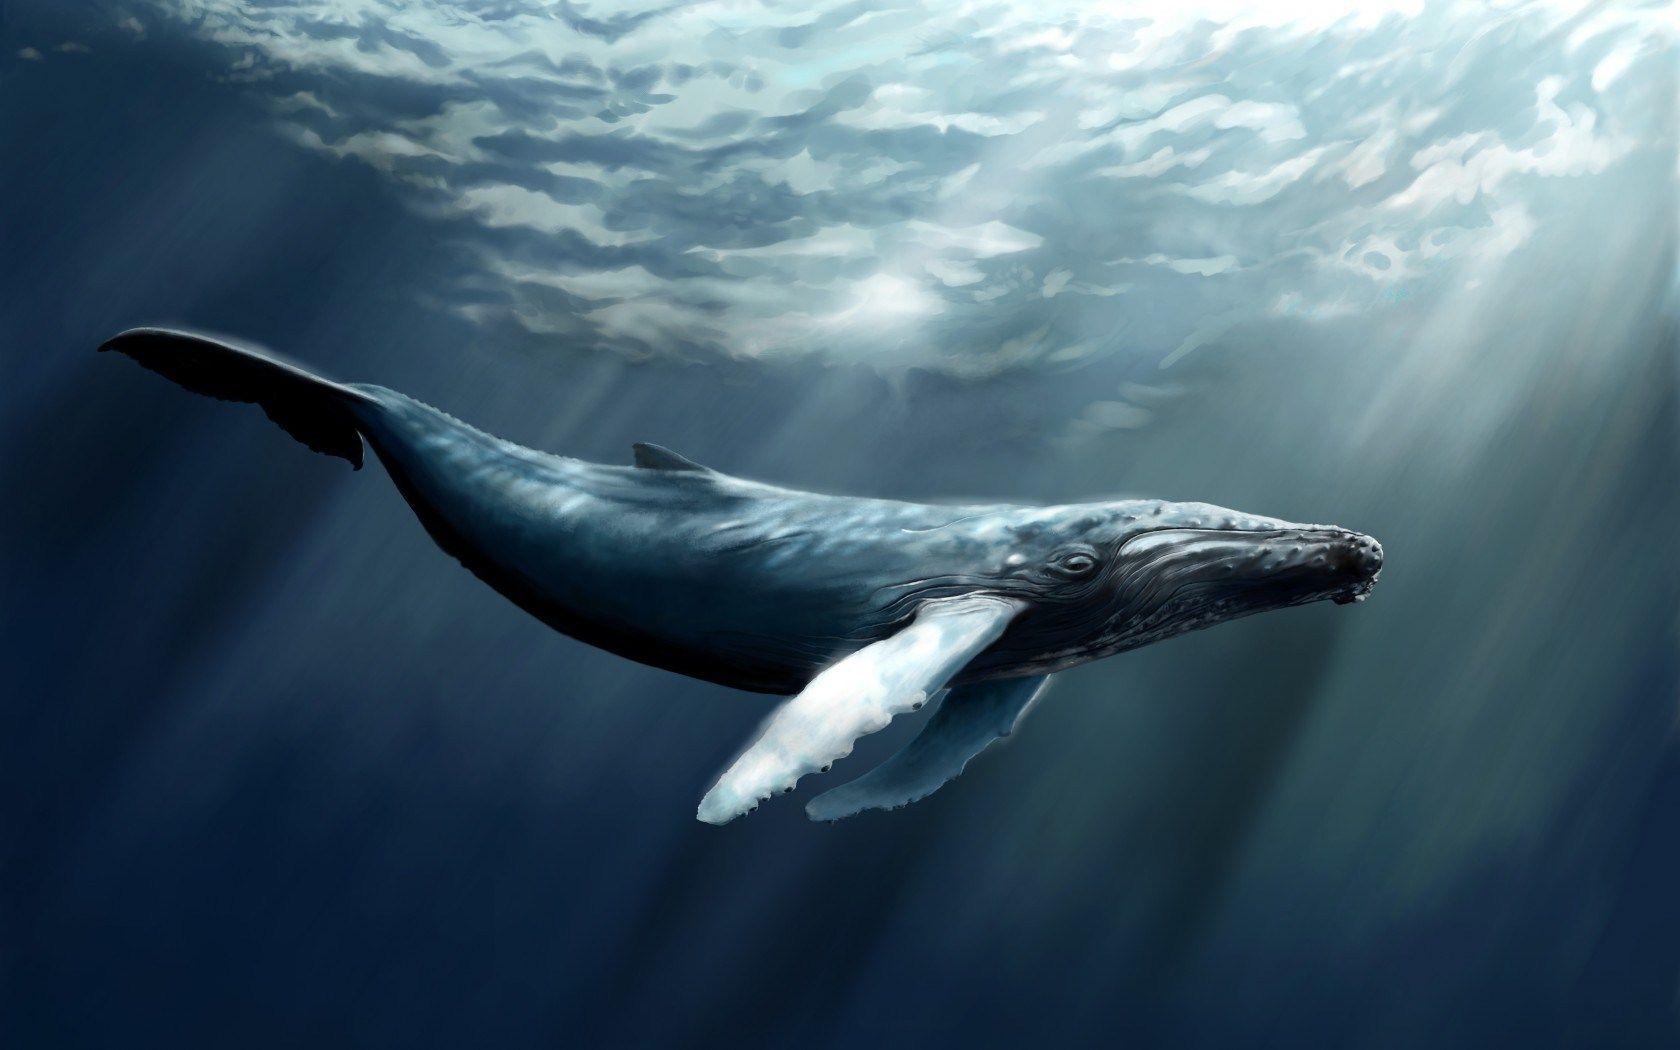 نهنگ قطبی (Bowhead whale)